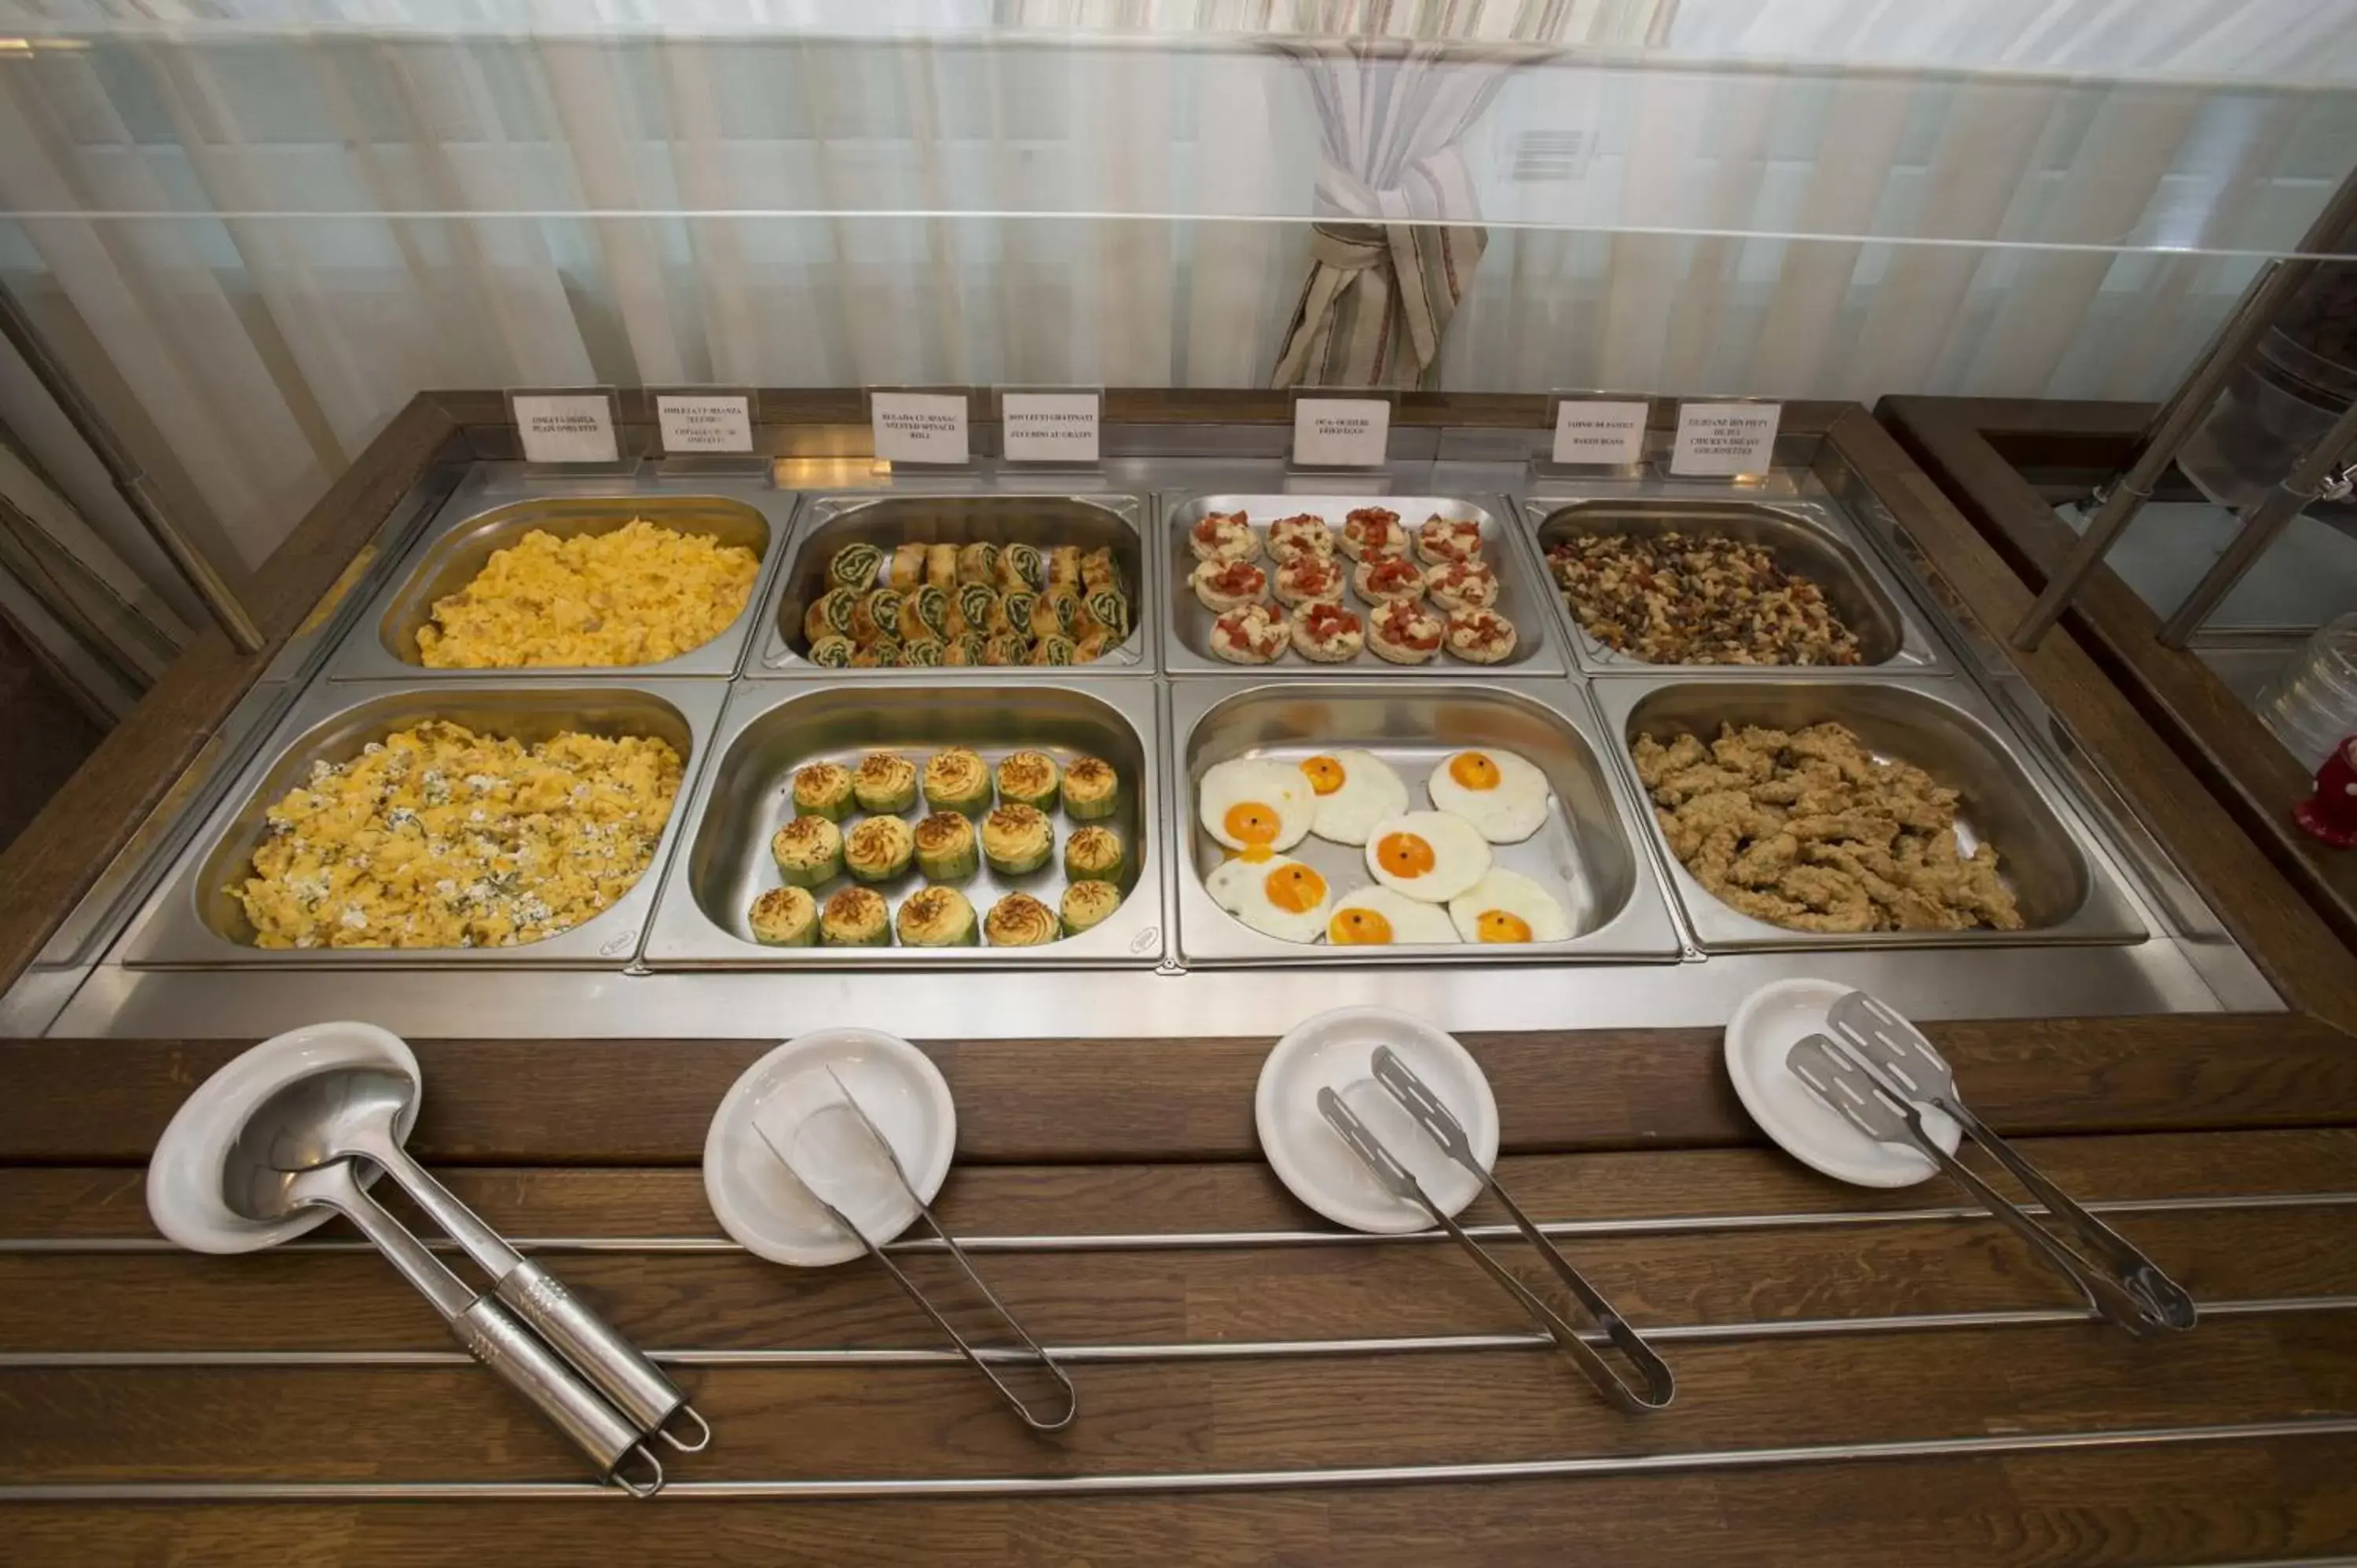 Buffet breakfast in Hotel Ambient